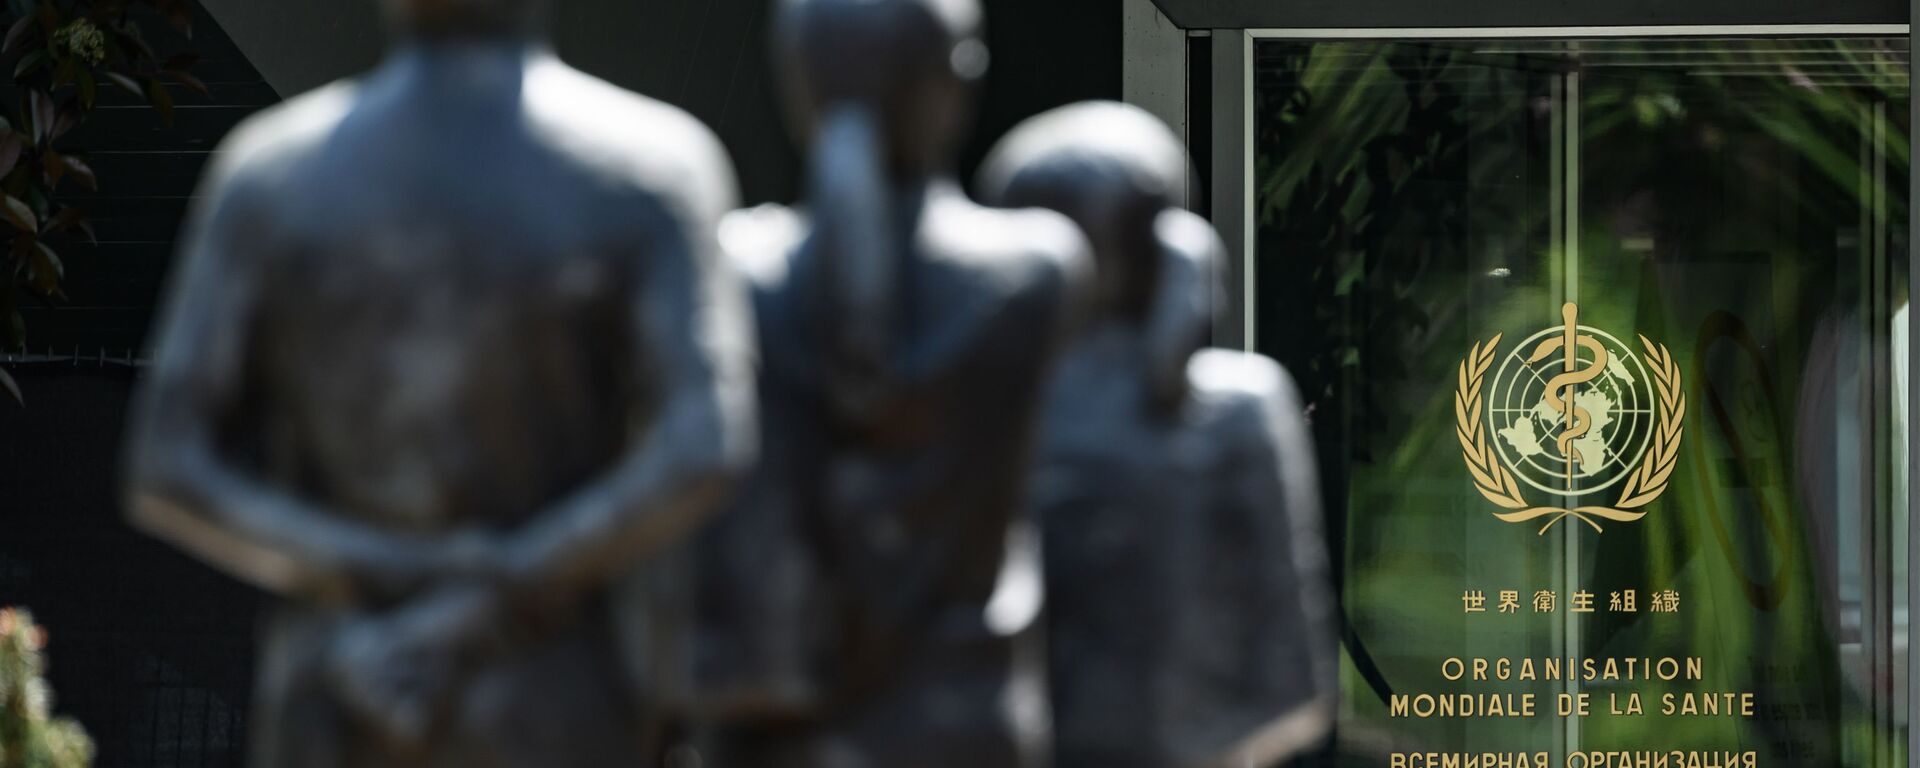 На этом снимке, сделанном 24 апреля 2020 года, изображены статуи, стоящие перед входом в штаб-квартиру Всемирной организации здравоохранения (ВОЗ) в Женеве, на фоне вспышки COVID-19, вызванной новым коронавирусом. - Sputnik Абхазия, 1920, 24.11.2021